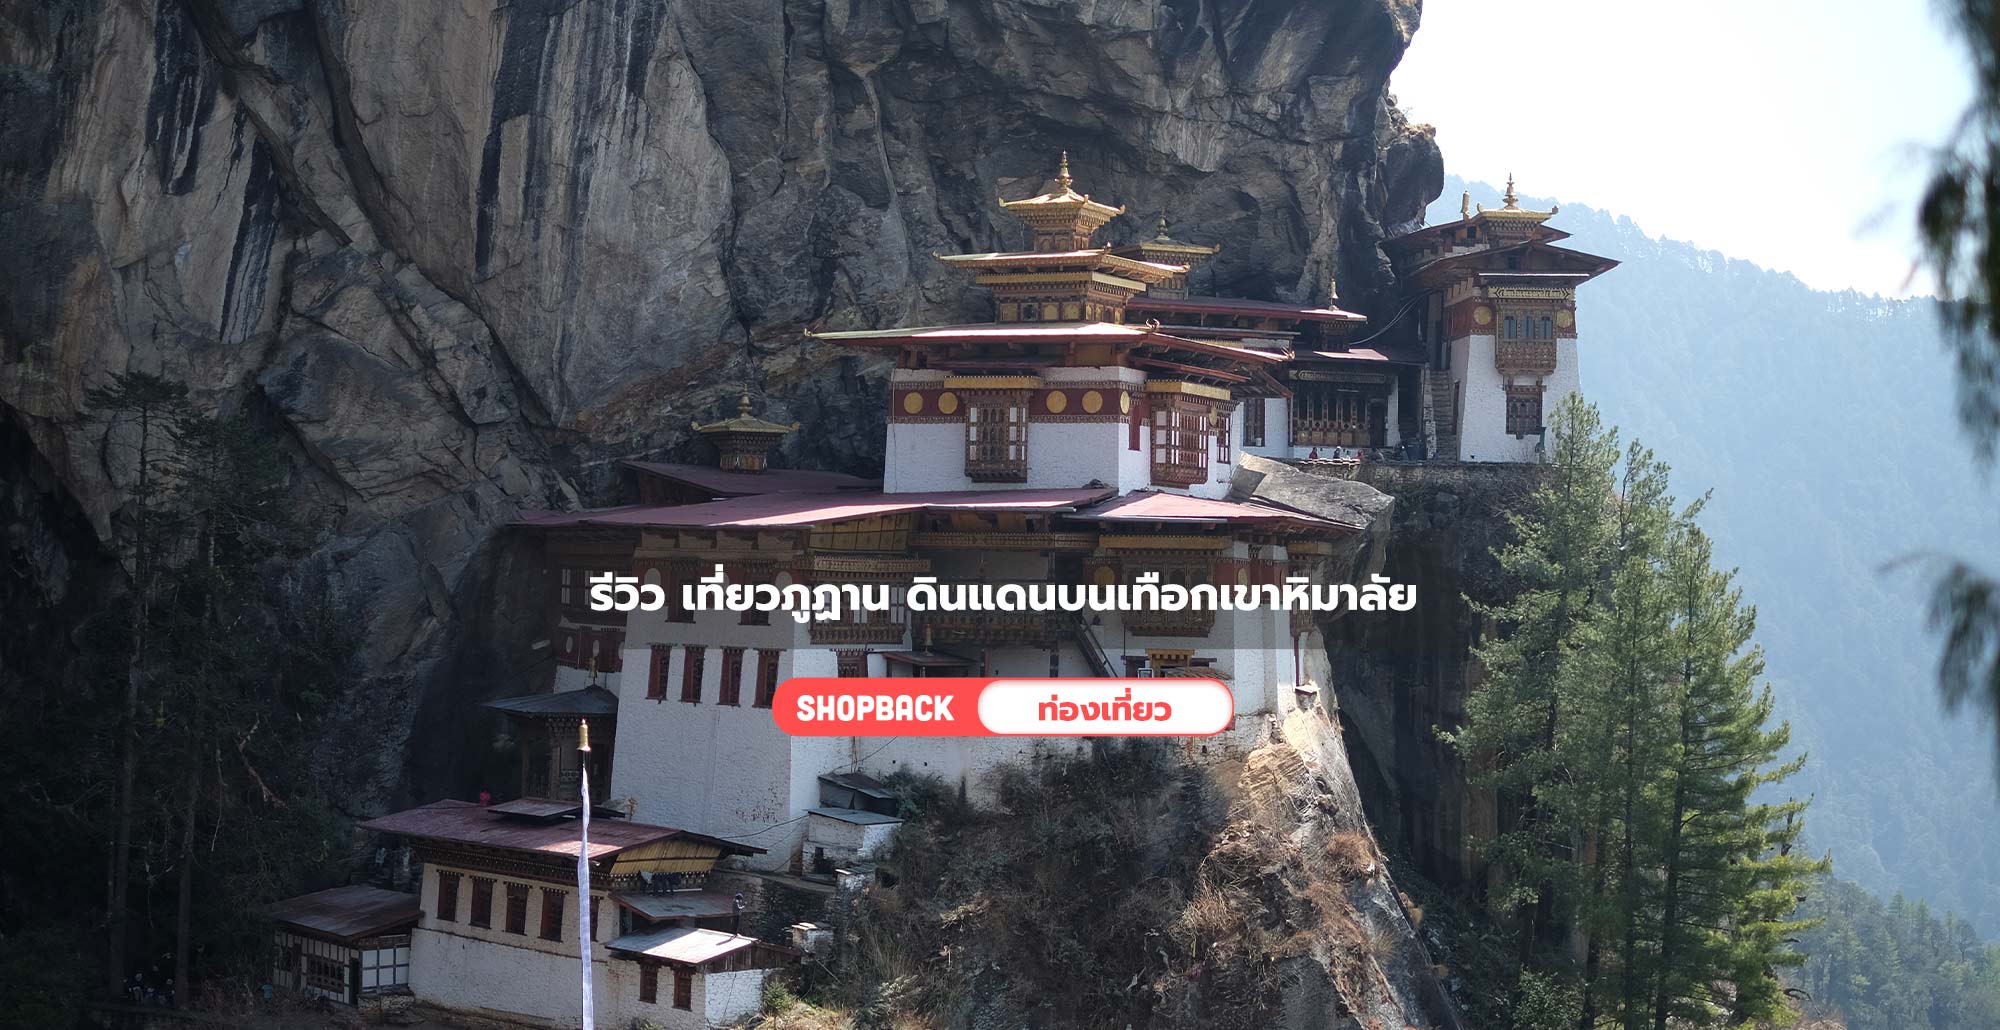 เที่ยวต่างประเทศ : รีวิว เที่ยวภูฏาน 3 วัน  สู่ดินแดนแห่งความสุขบนเทือกเขาหิมาลัย